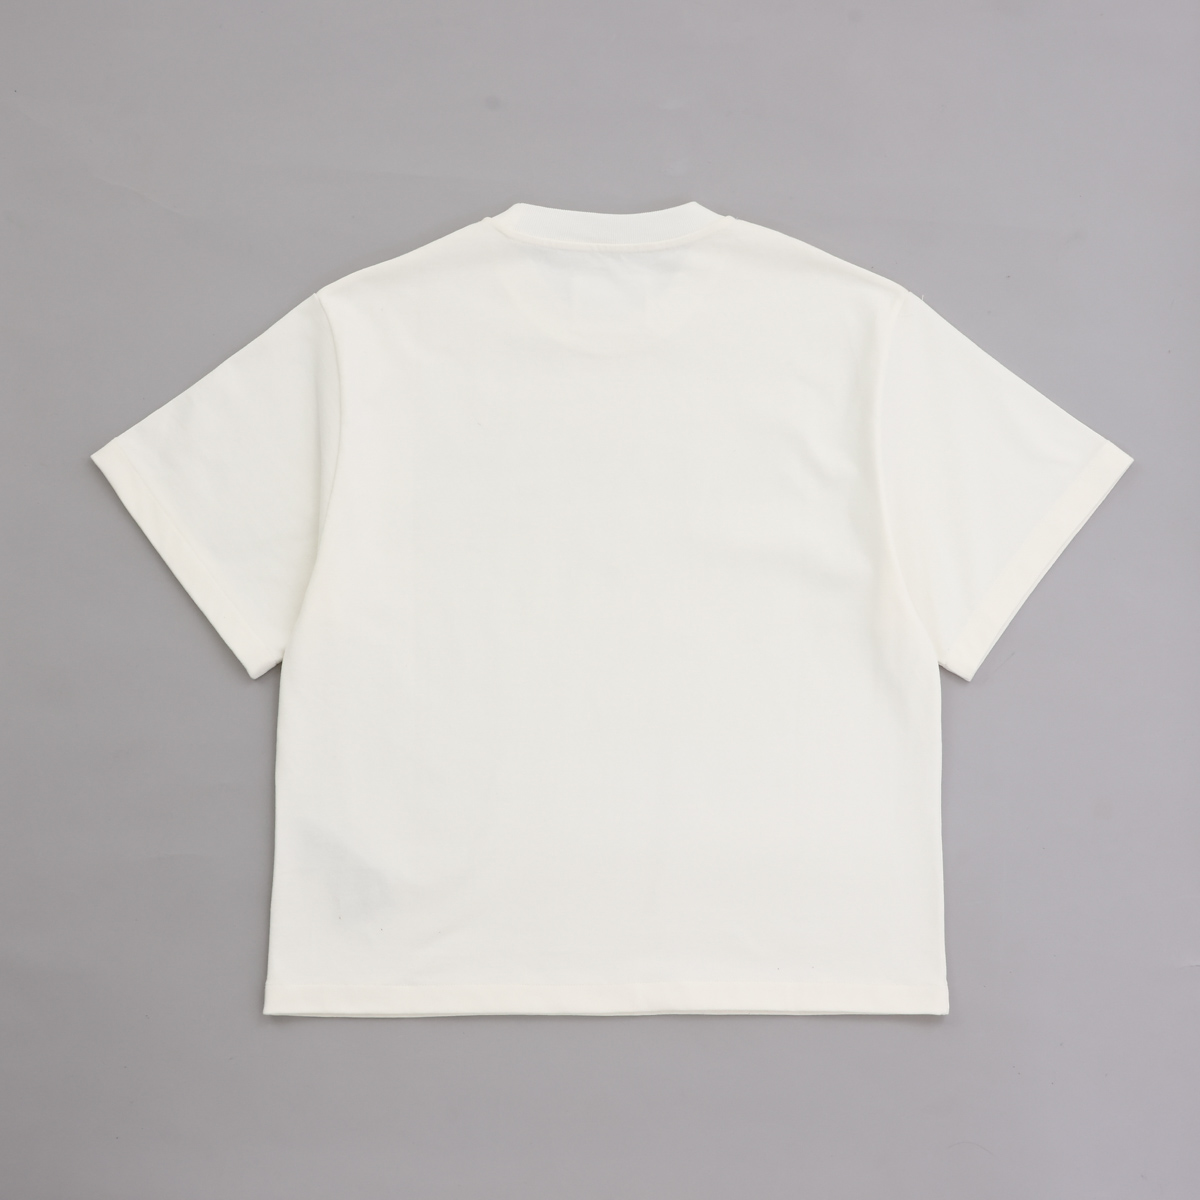 ジルサンダー JIL SANDER レディースTシャツ ホワイト J02GC0001 J45047 102 クルーネック オーバーサイズ 半袖 ロゴ